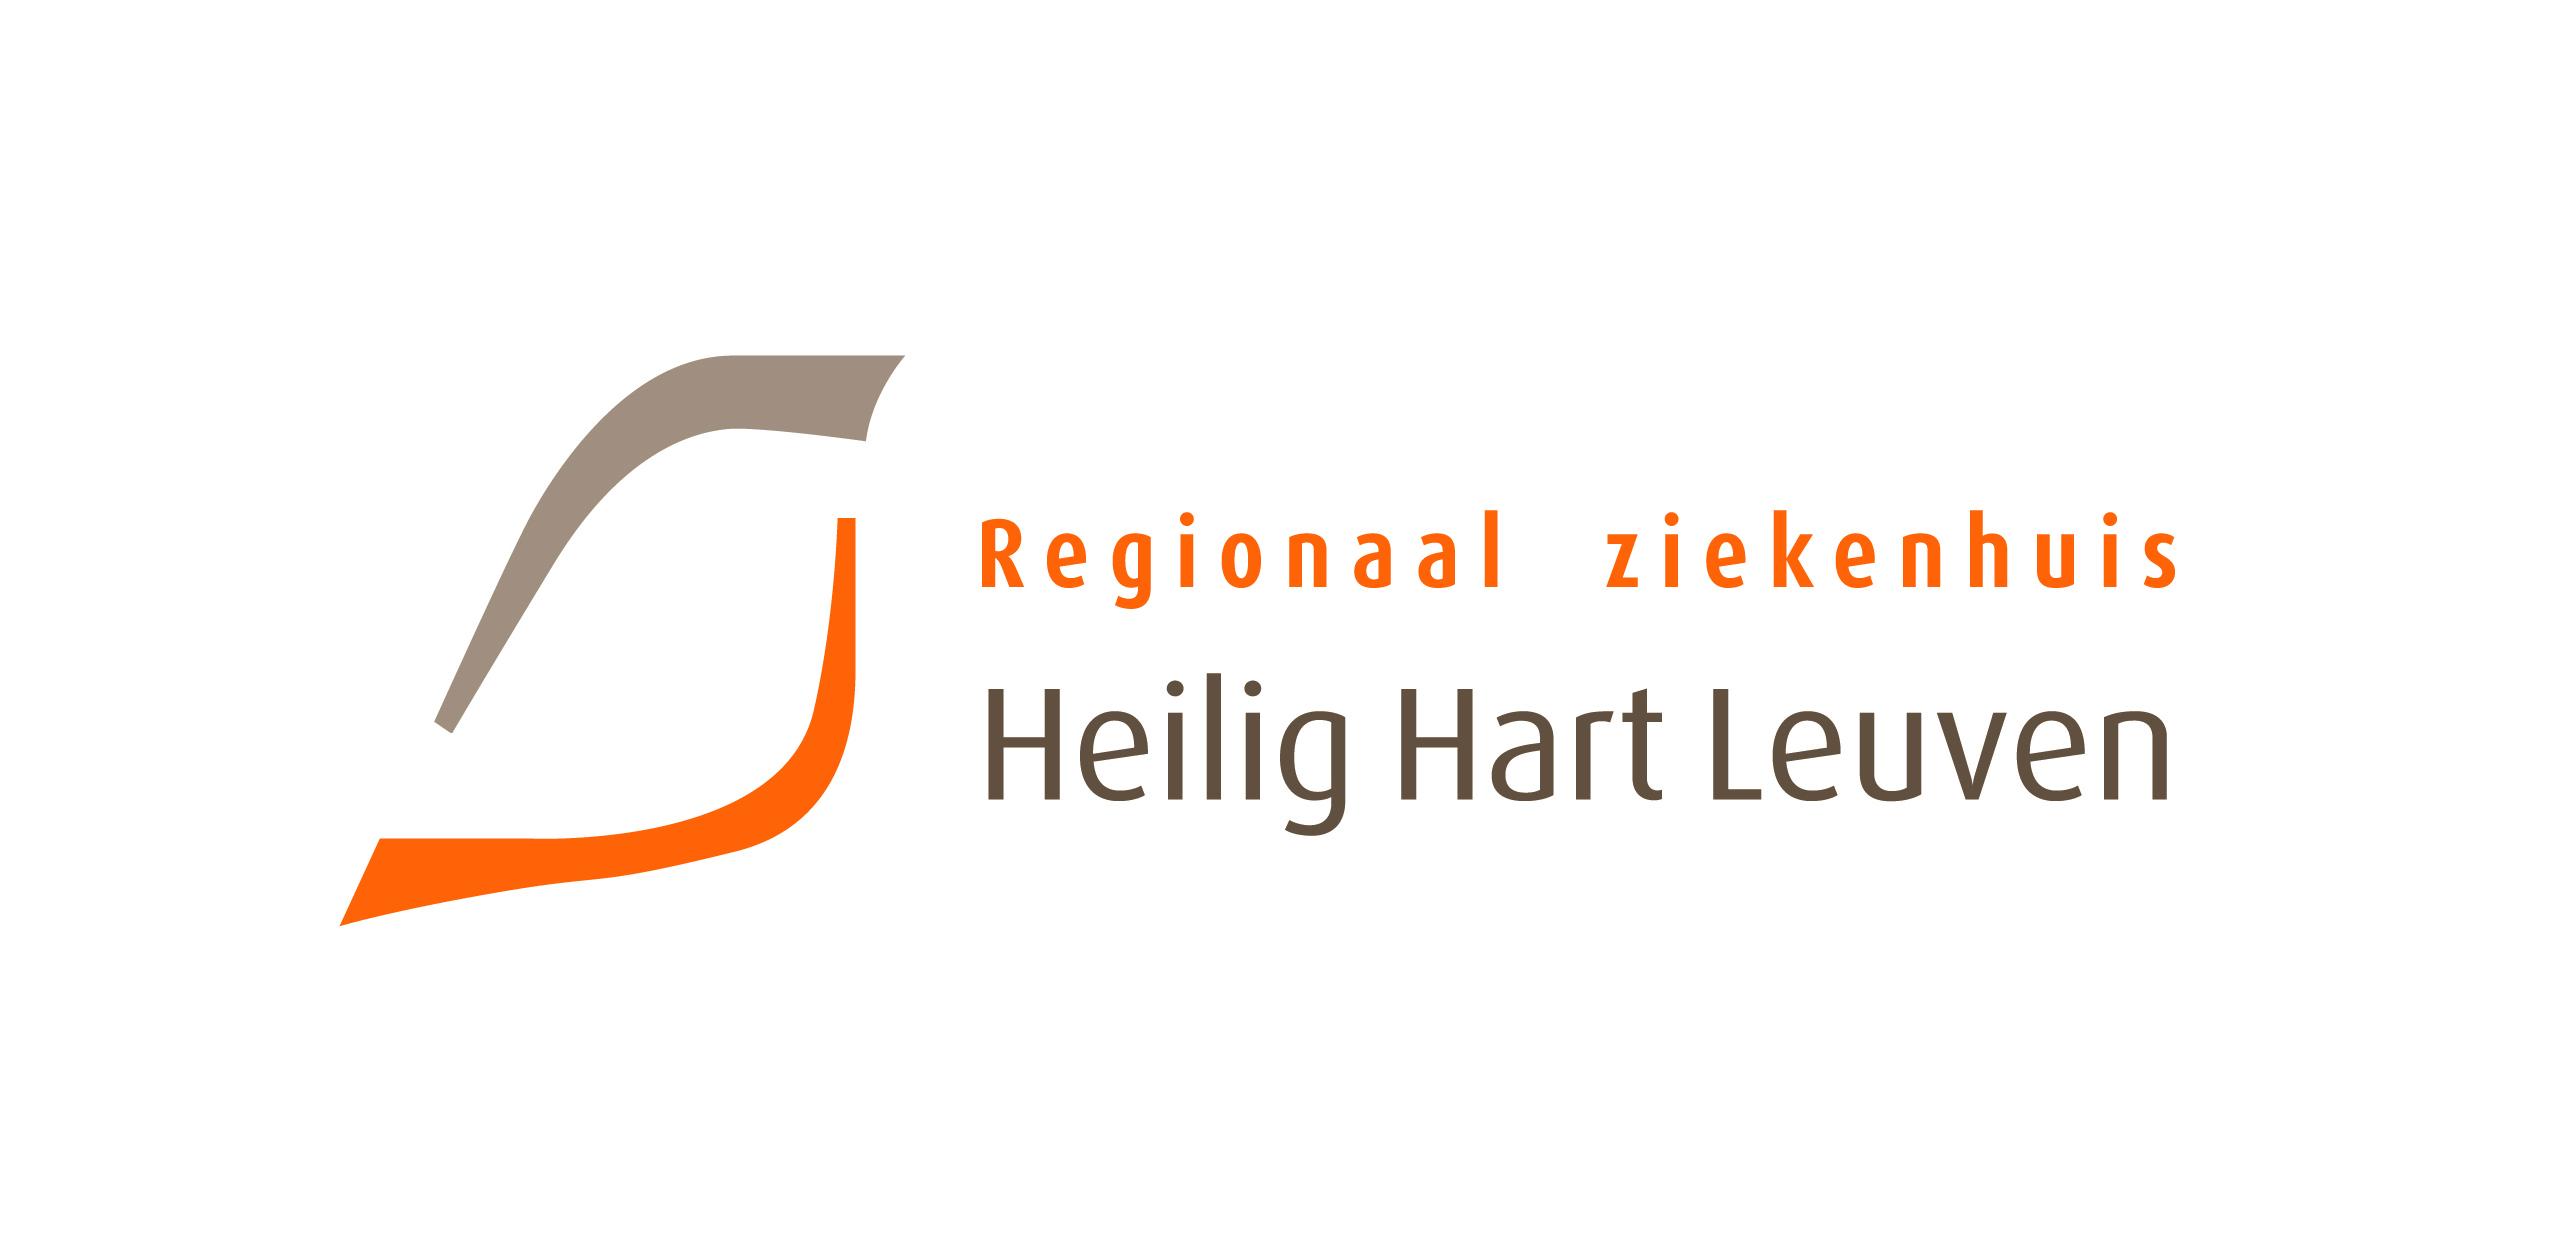 Regionaal ziekenhuis Heilig Hart Leuven (logo)